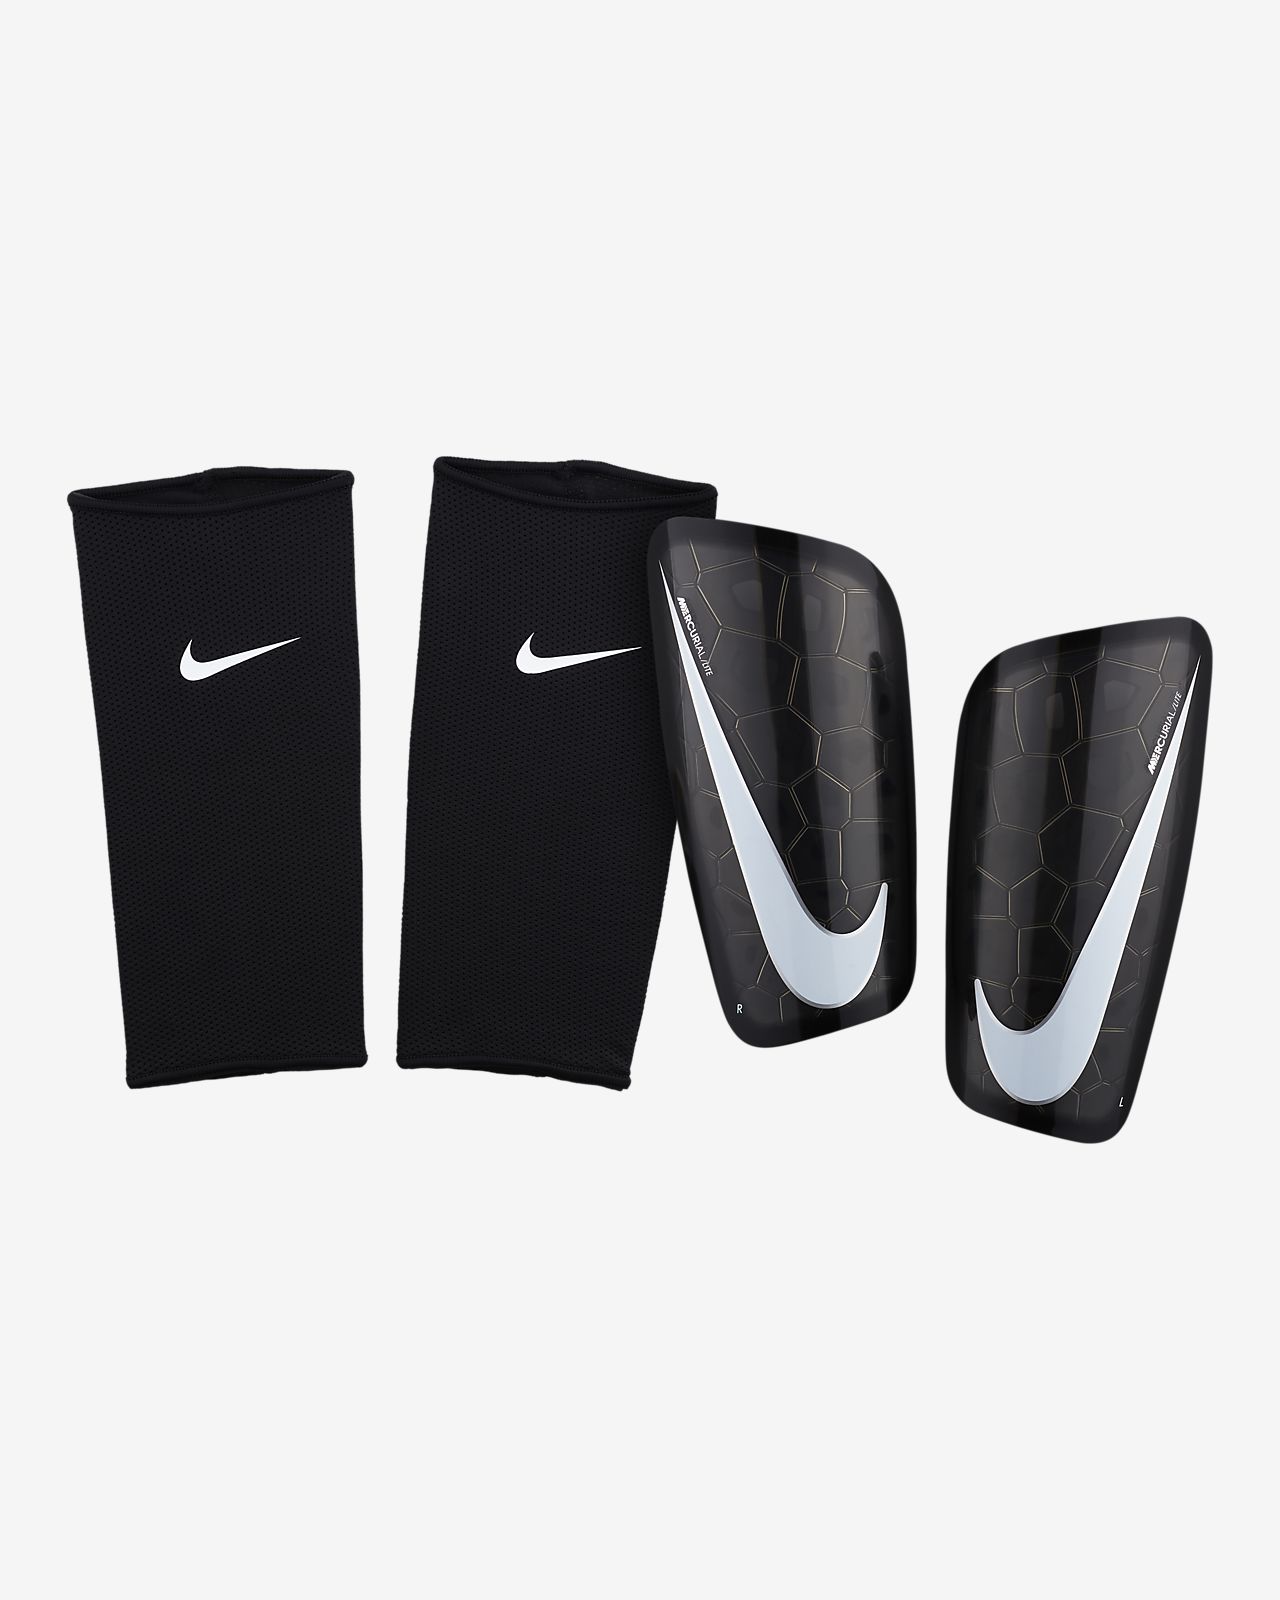 Nike Mercurial Shin Pads Size Chart